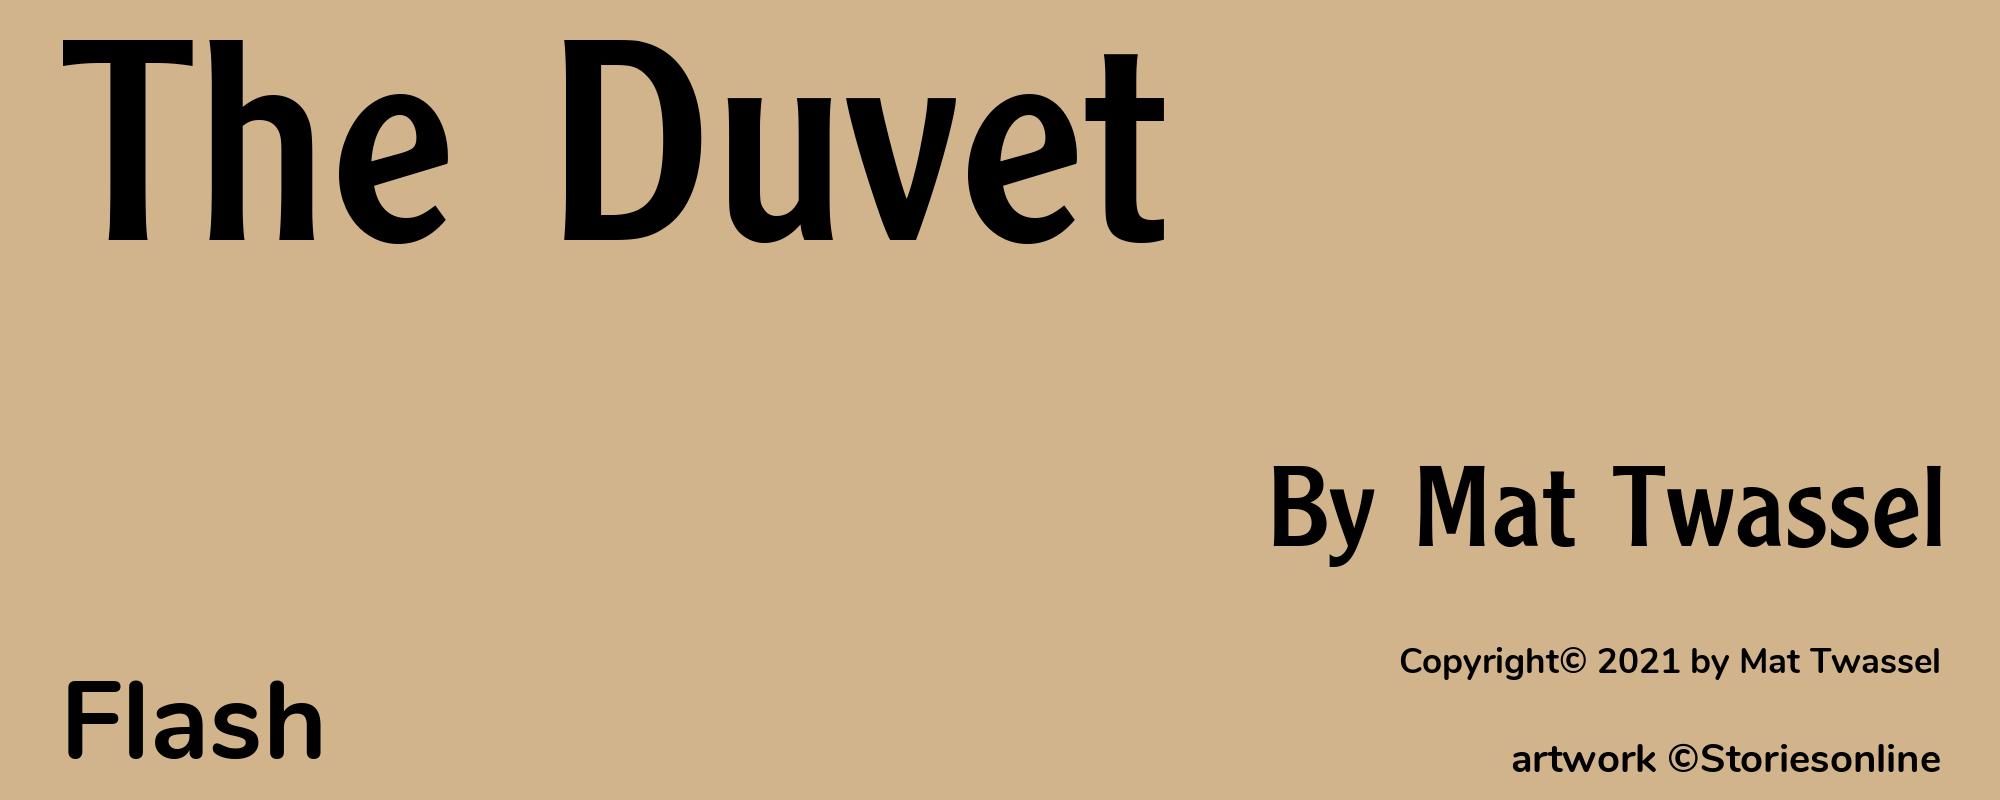 The Duvet - Cover